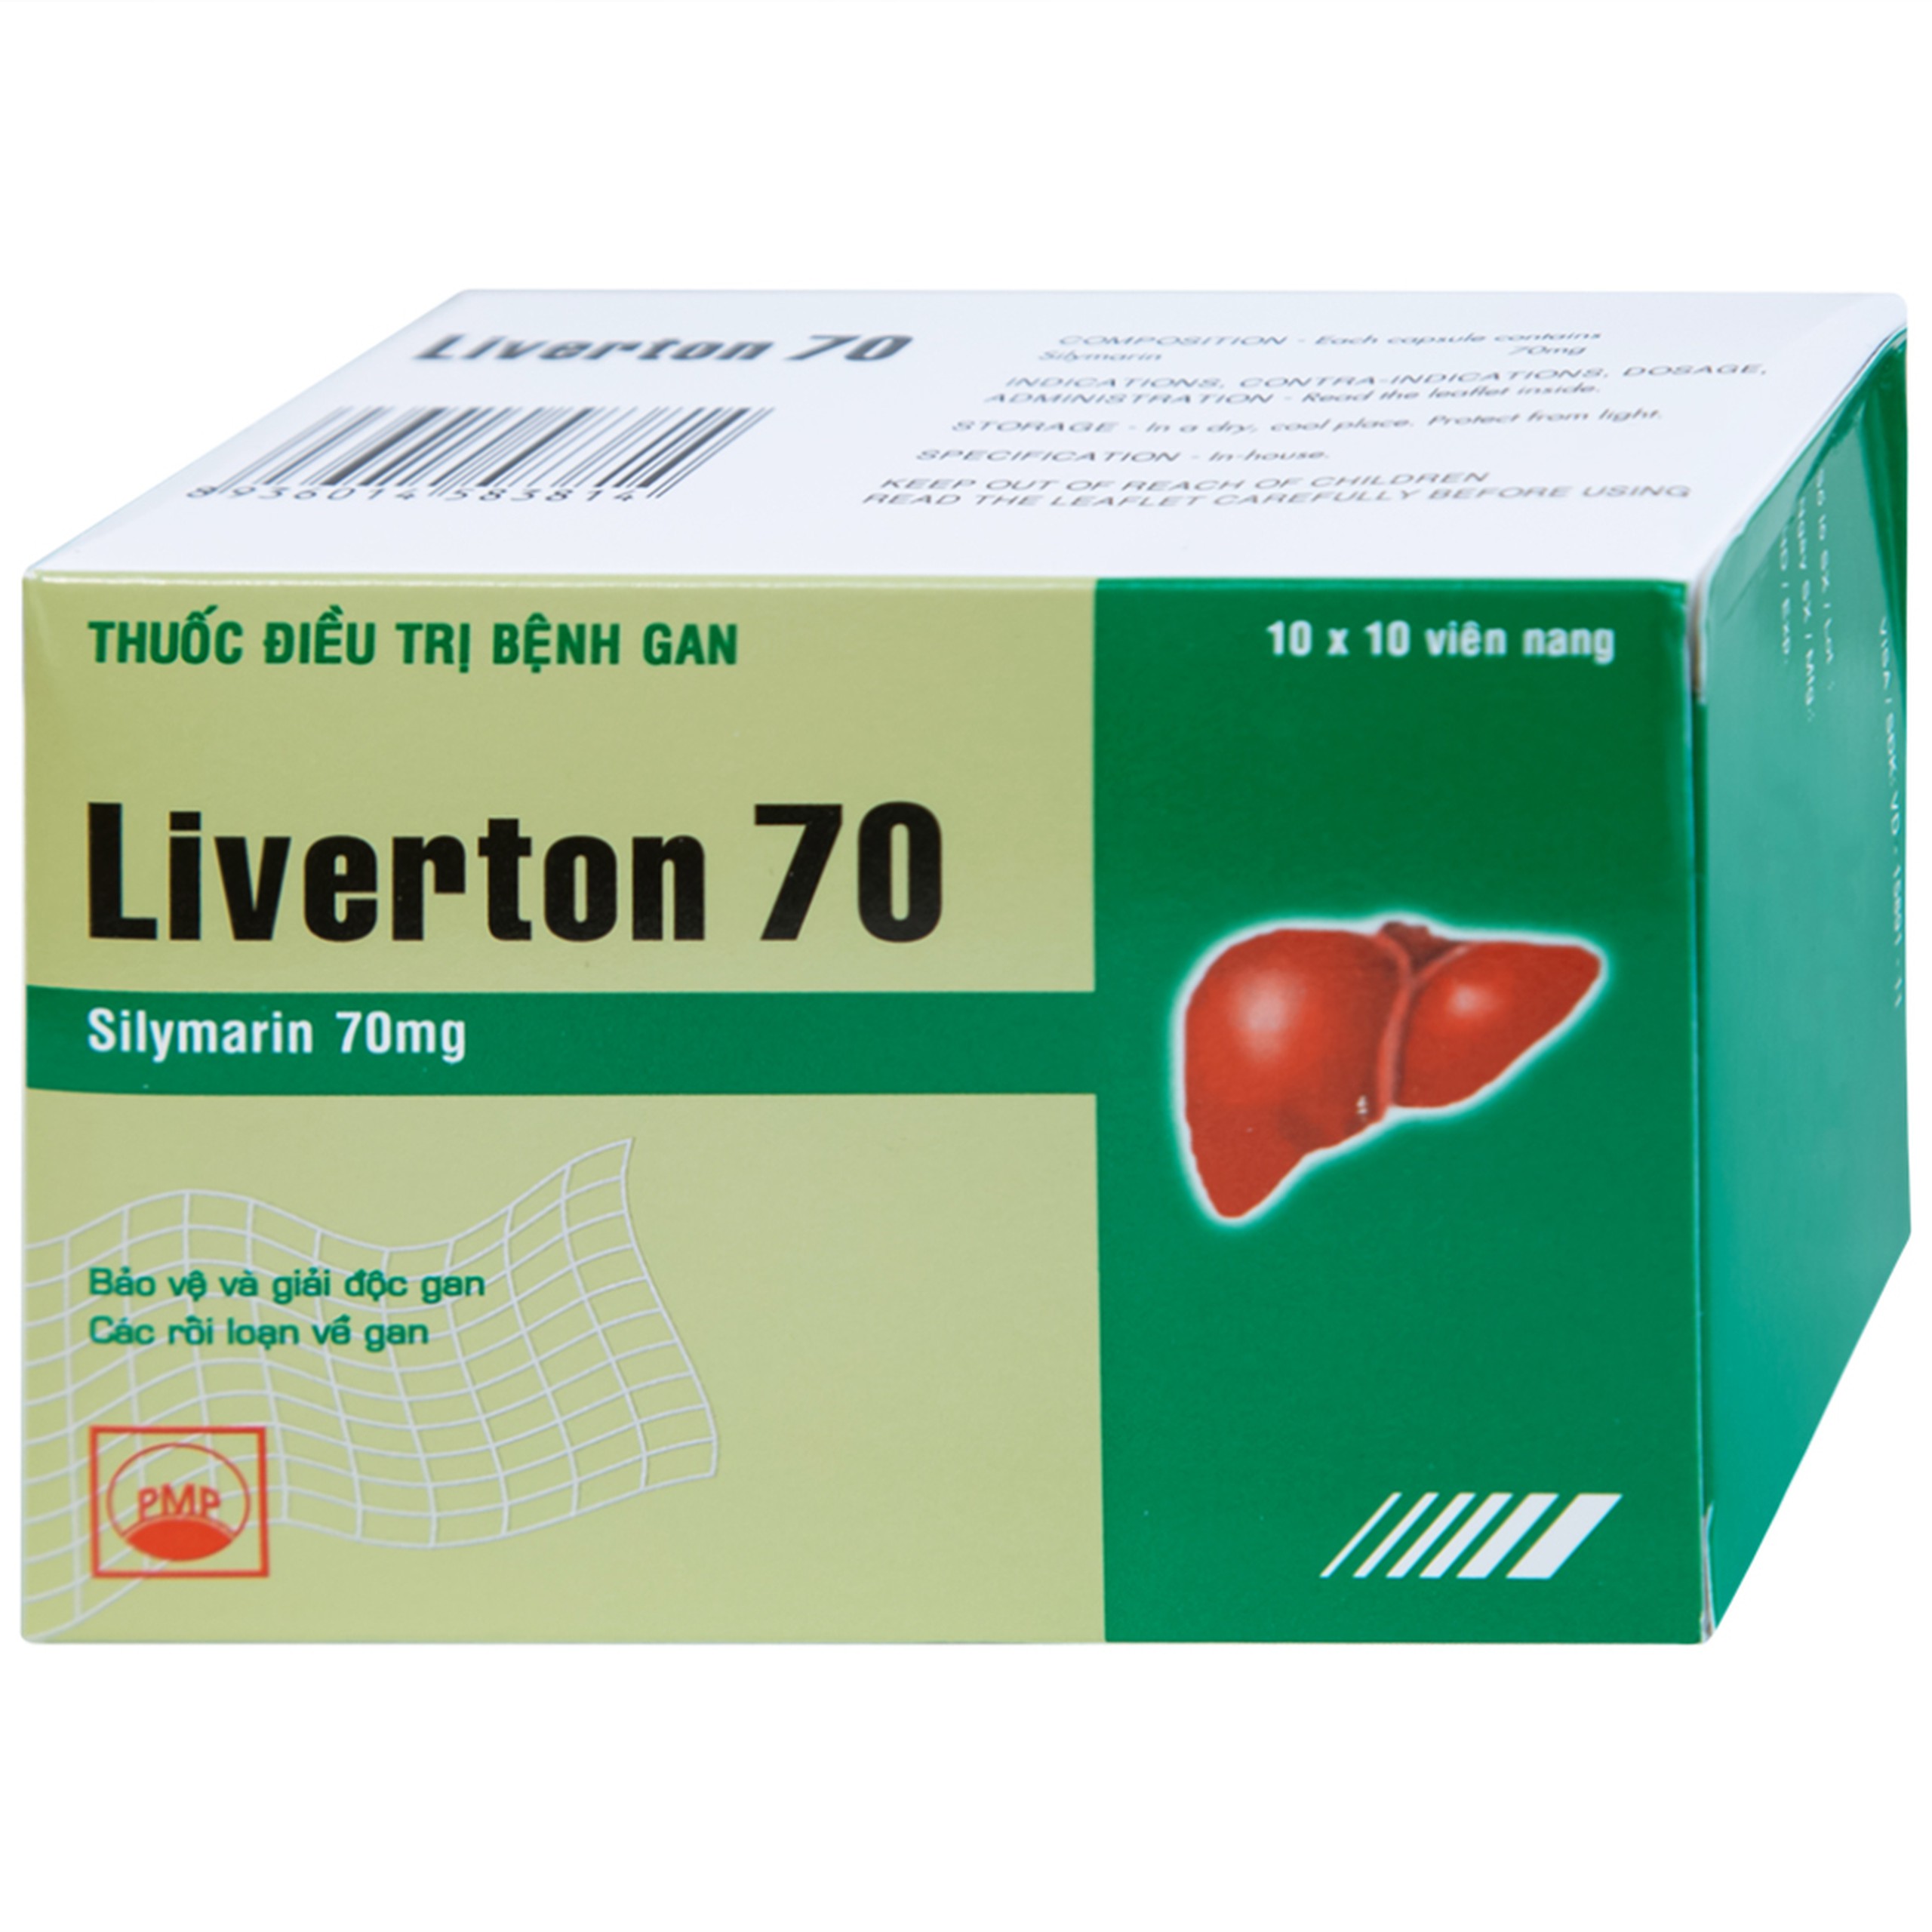 Viên nang cứng Liverton 70 Pymepharco điều trị bệnh gan, giải độc gan, rối loạn về gan (10 vỉ x 10 viên) 